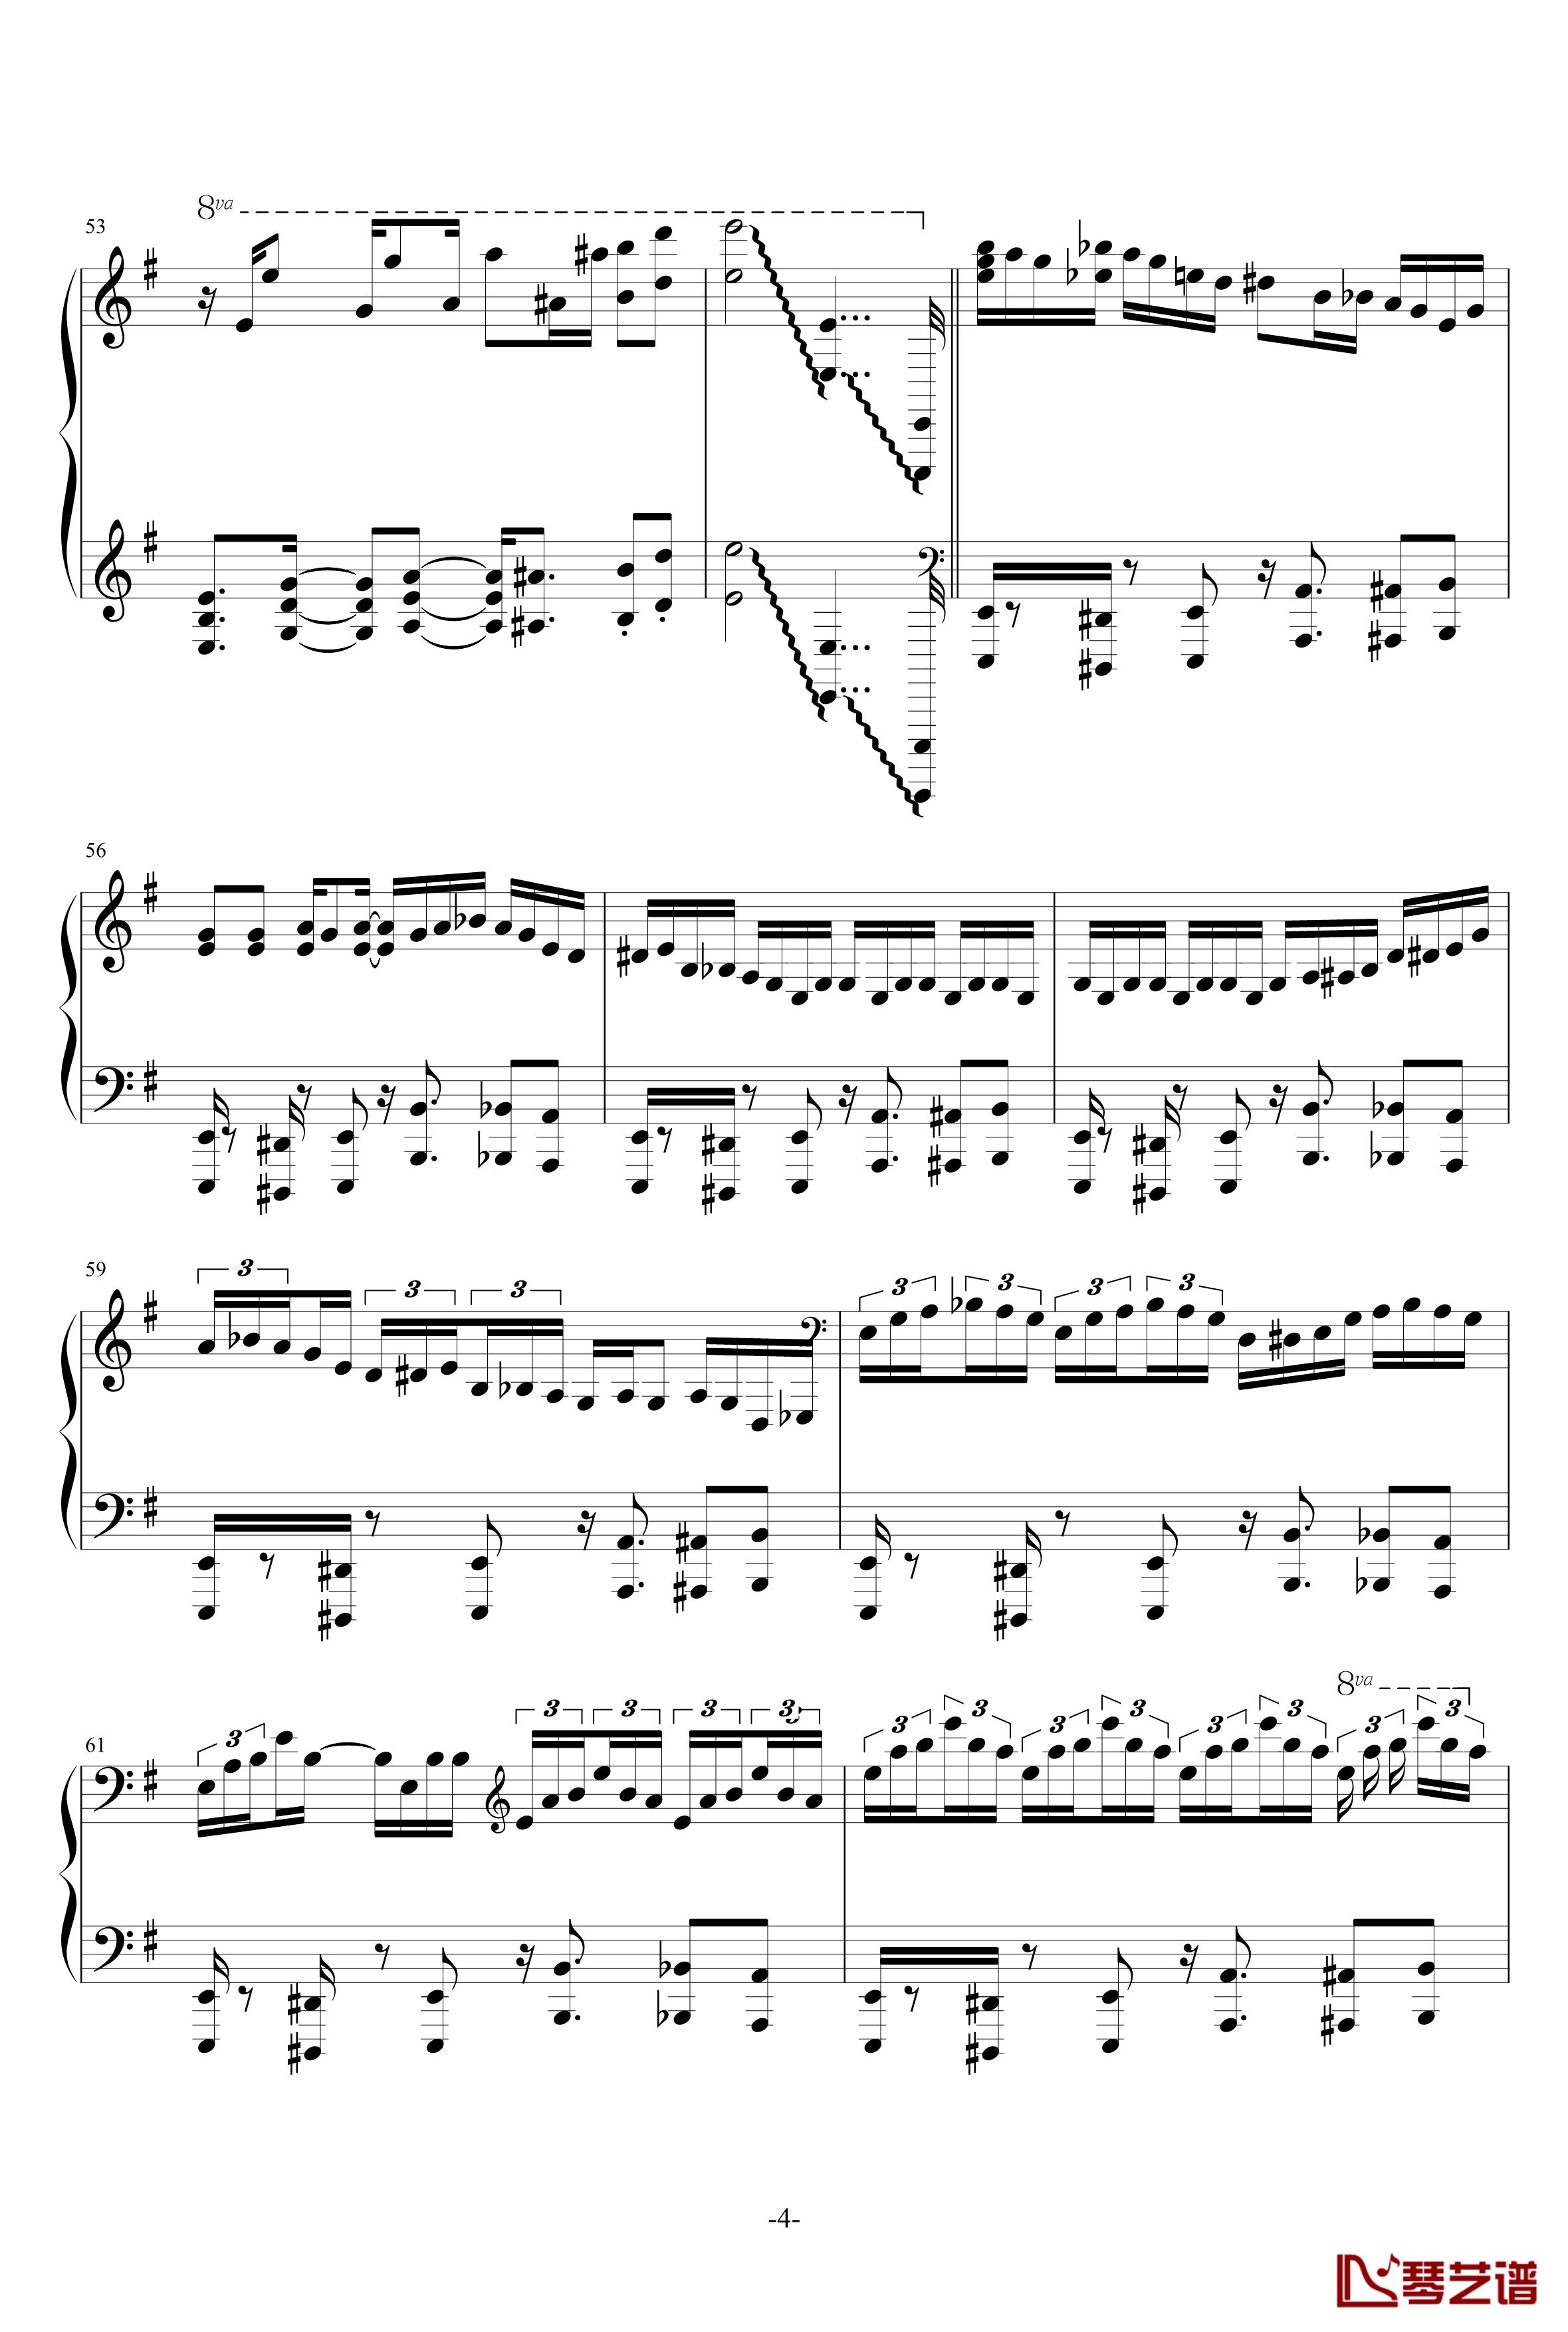 ダイナマイト钢琴谱-pia-no-jac·炸药-风神雷神